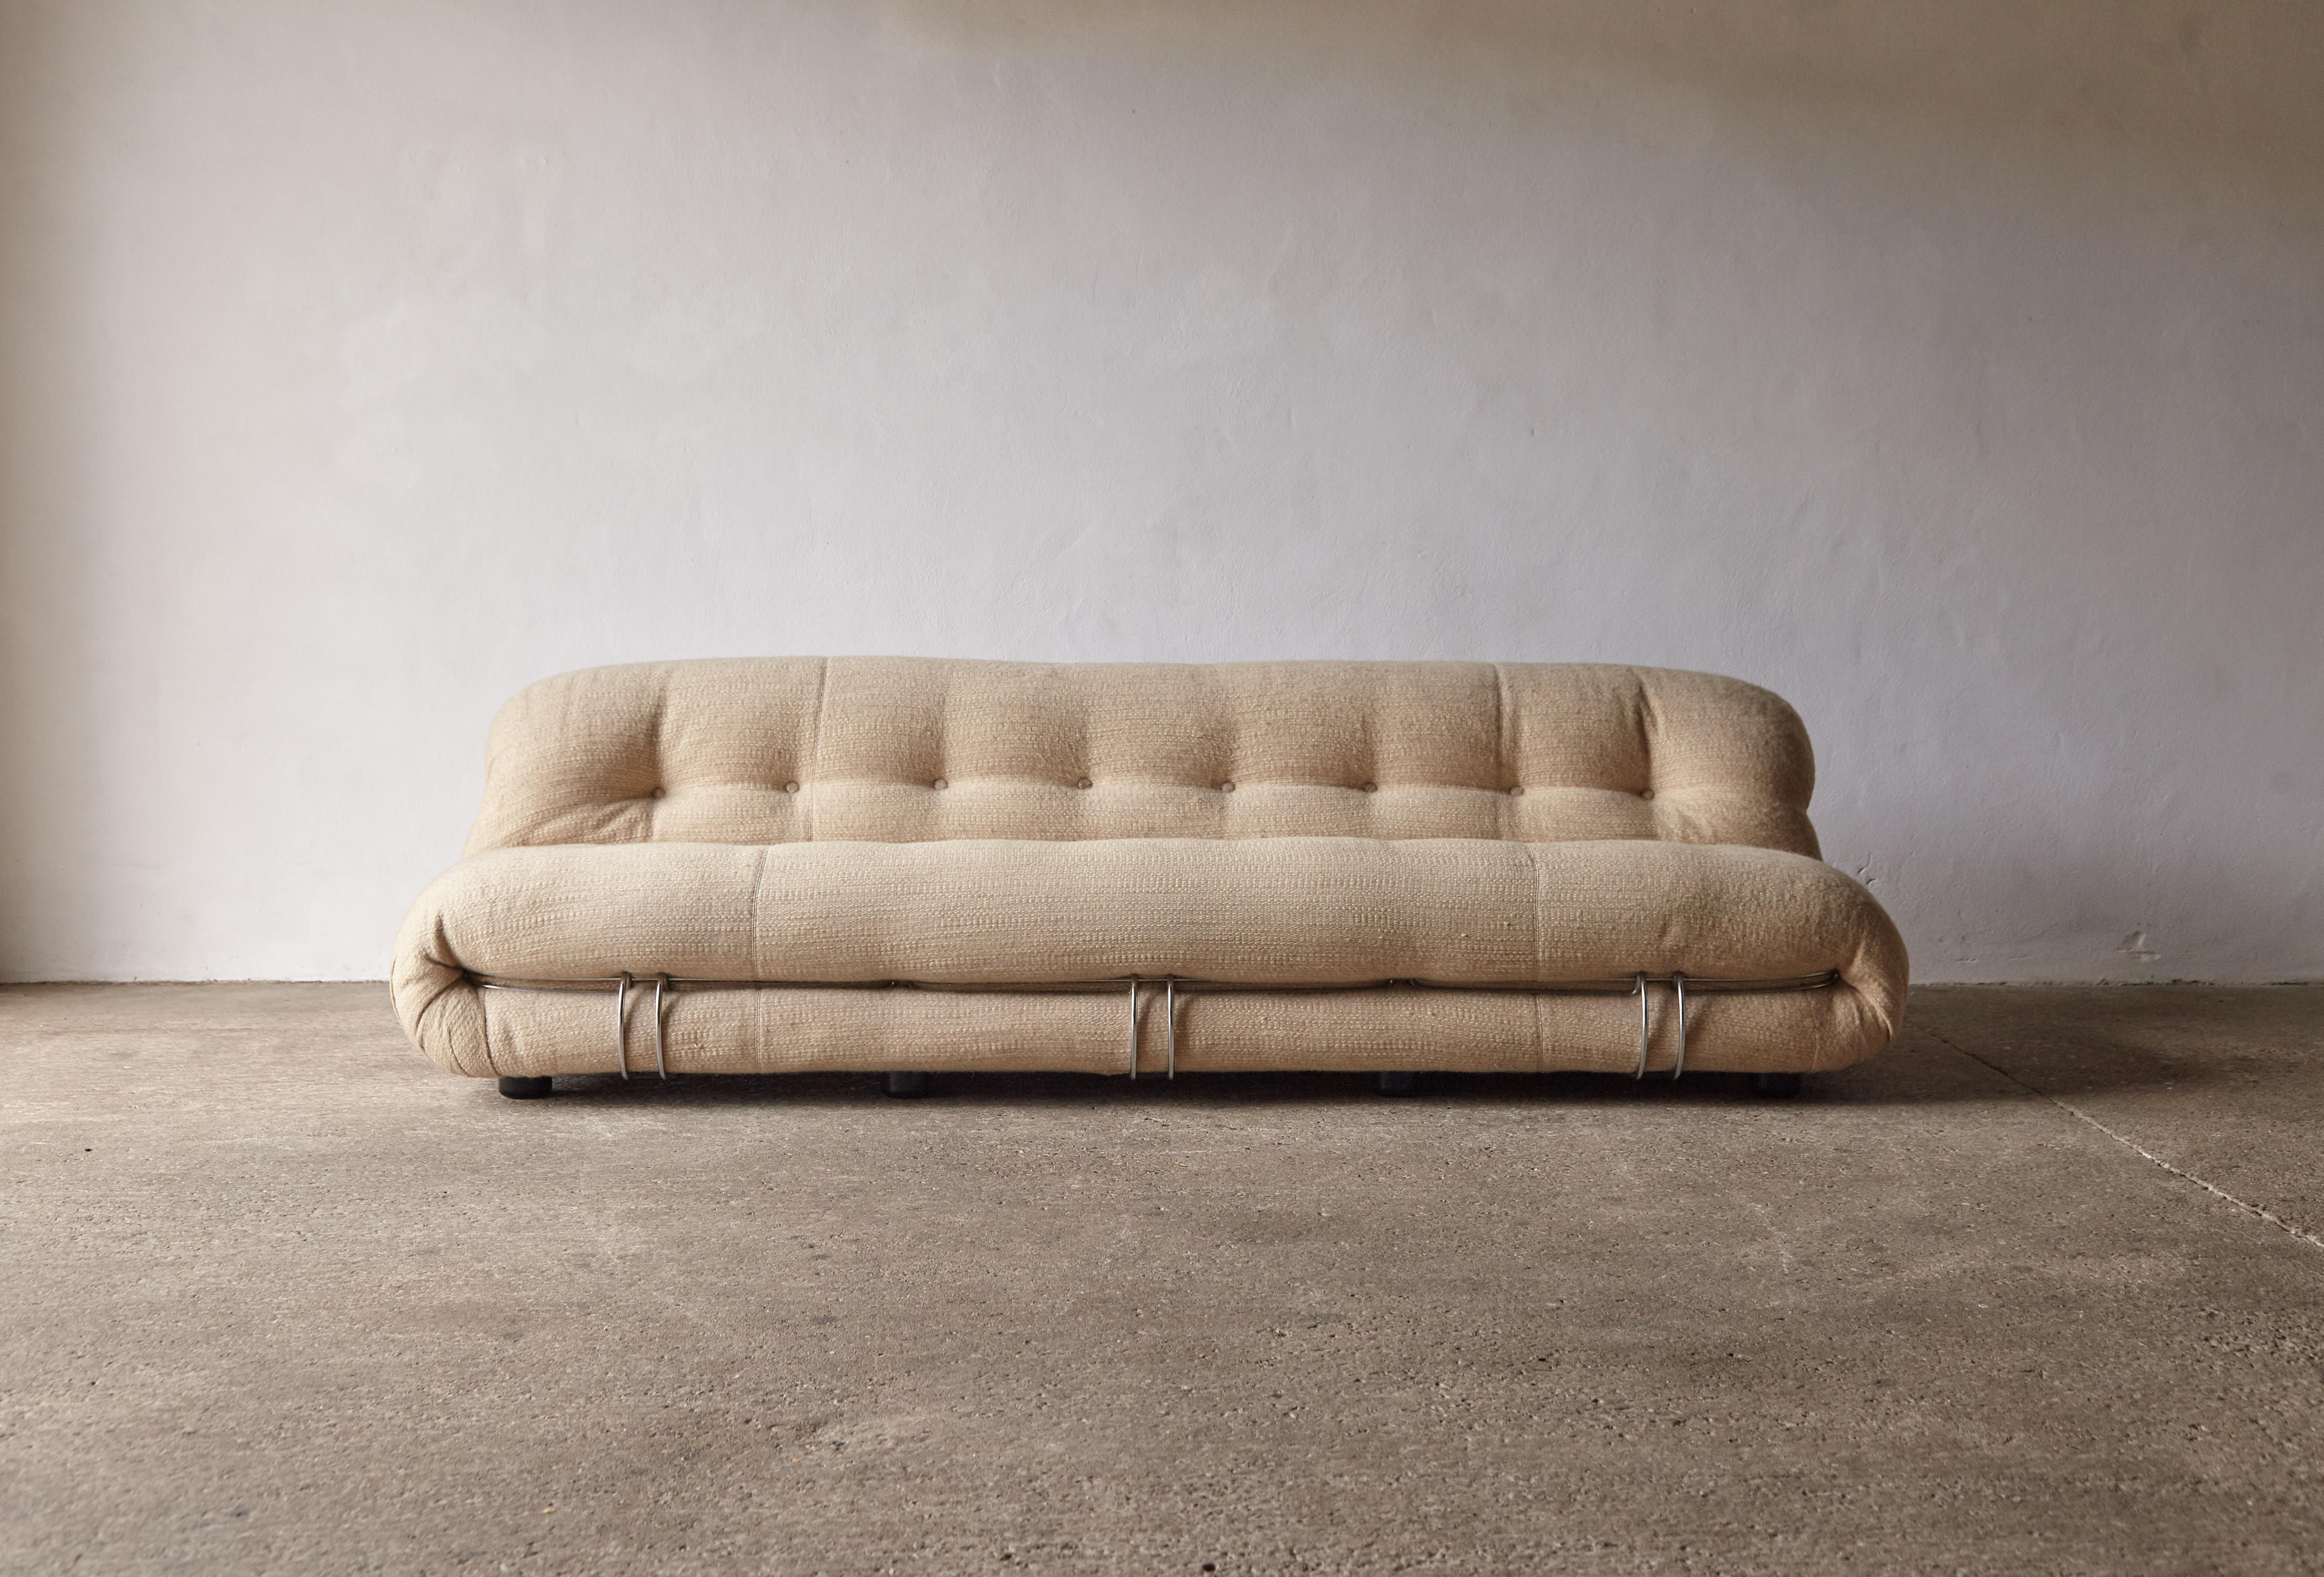 Ein hervorragendes Soriana-Sofa mit 3 Sitzplätzen, entworfen von Afra & Tobia Scarpa und hergestellt von Cassina in den 1970er Jahren. Dieses Exemplar ist in der Tat ein seltener Fund - alles in großartigem Zustand mit sauberem Original-Wollstoff.